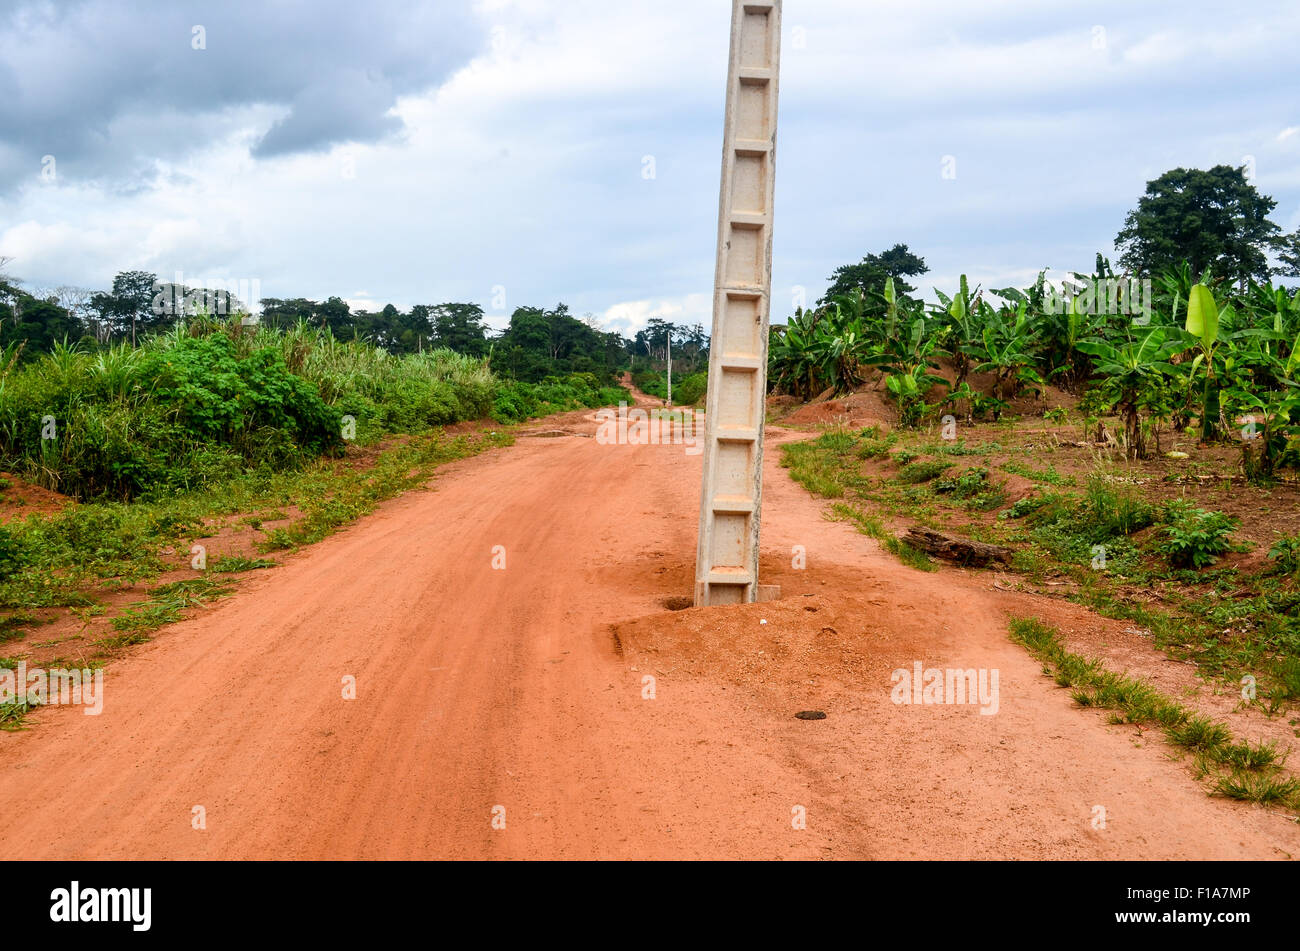 Elektrische Pol in der Mitte eine rote Erde unbefestigte Straße in ländlichen Regionen Afrikas Stockfoto